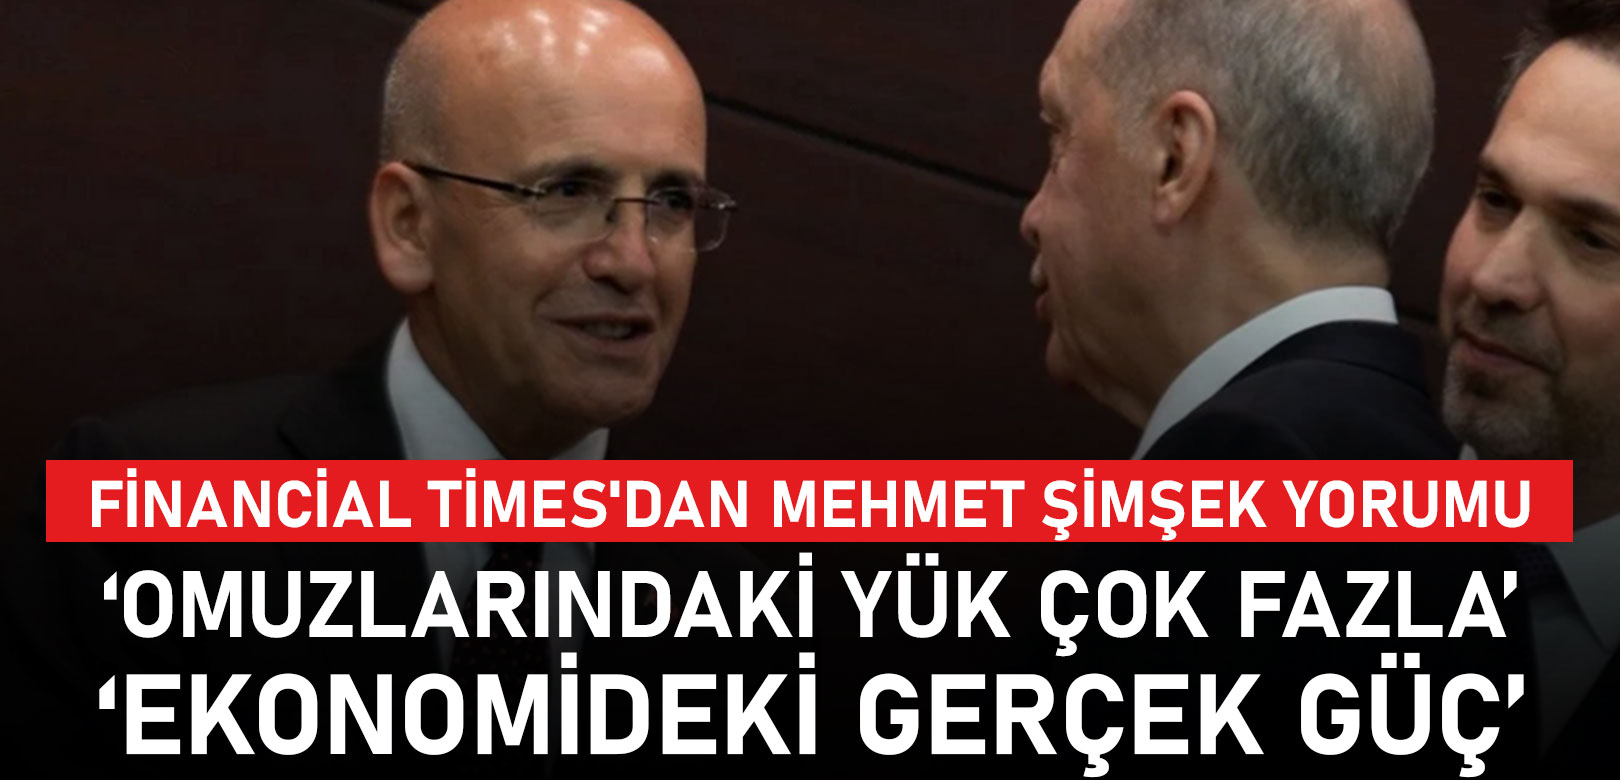 Financial Times'dan Mehmet Şimşek yorumu